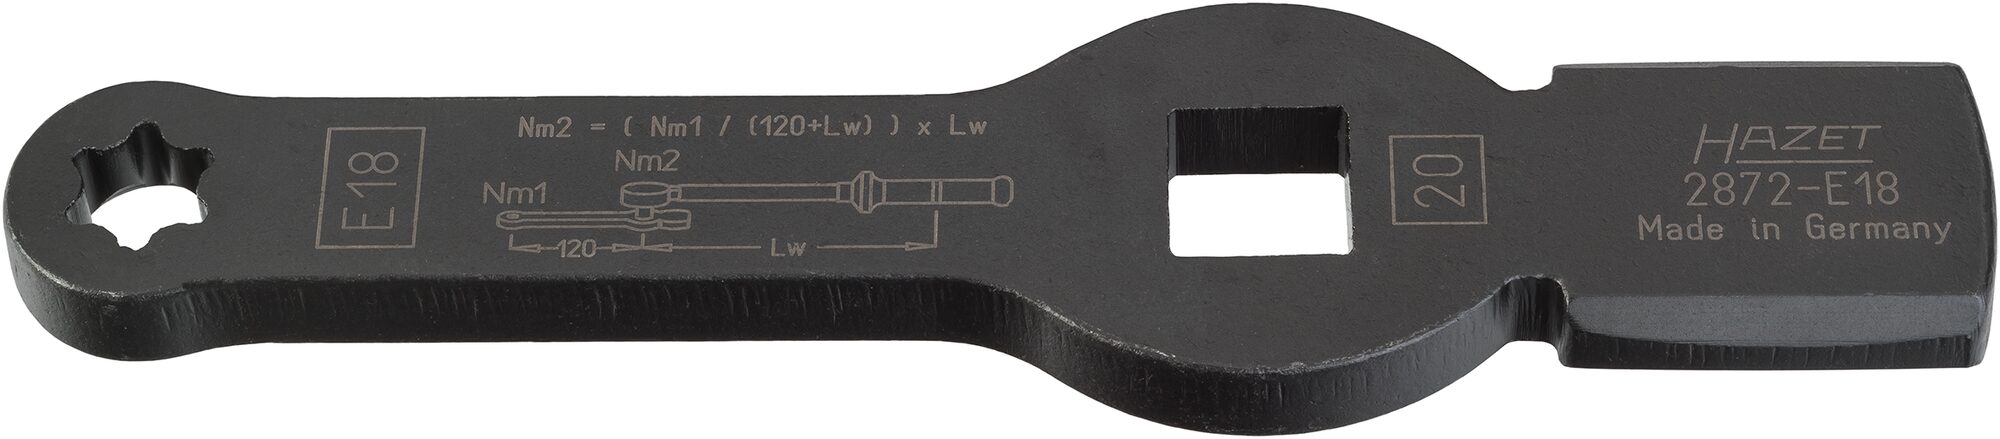 HAZET TORX® Schlag-Schlüssel · mit 2 Schlagflächen 2872-E18 · Vierkant hohl 20 mm (3/4 Zoll) · Außen TORX® Profil · E18